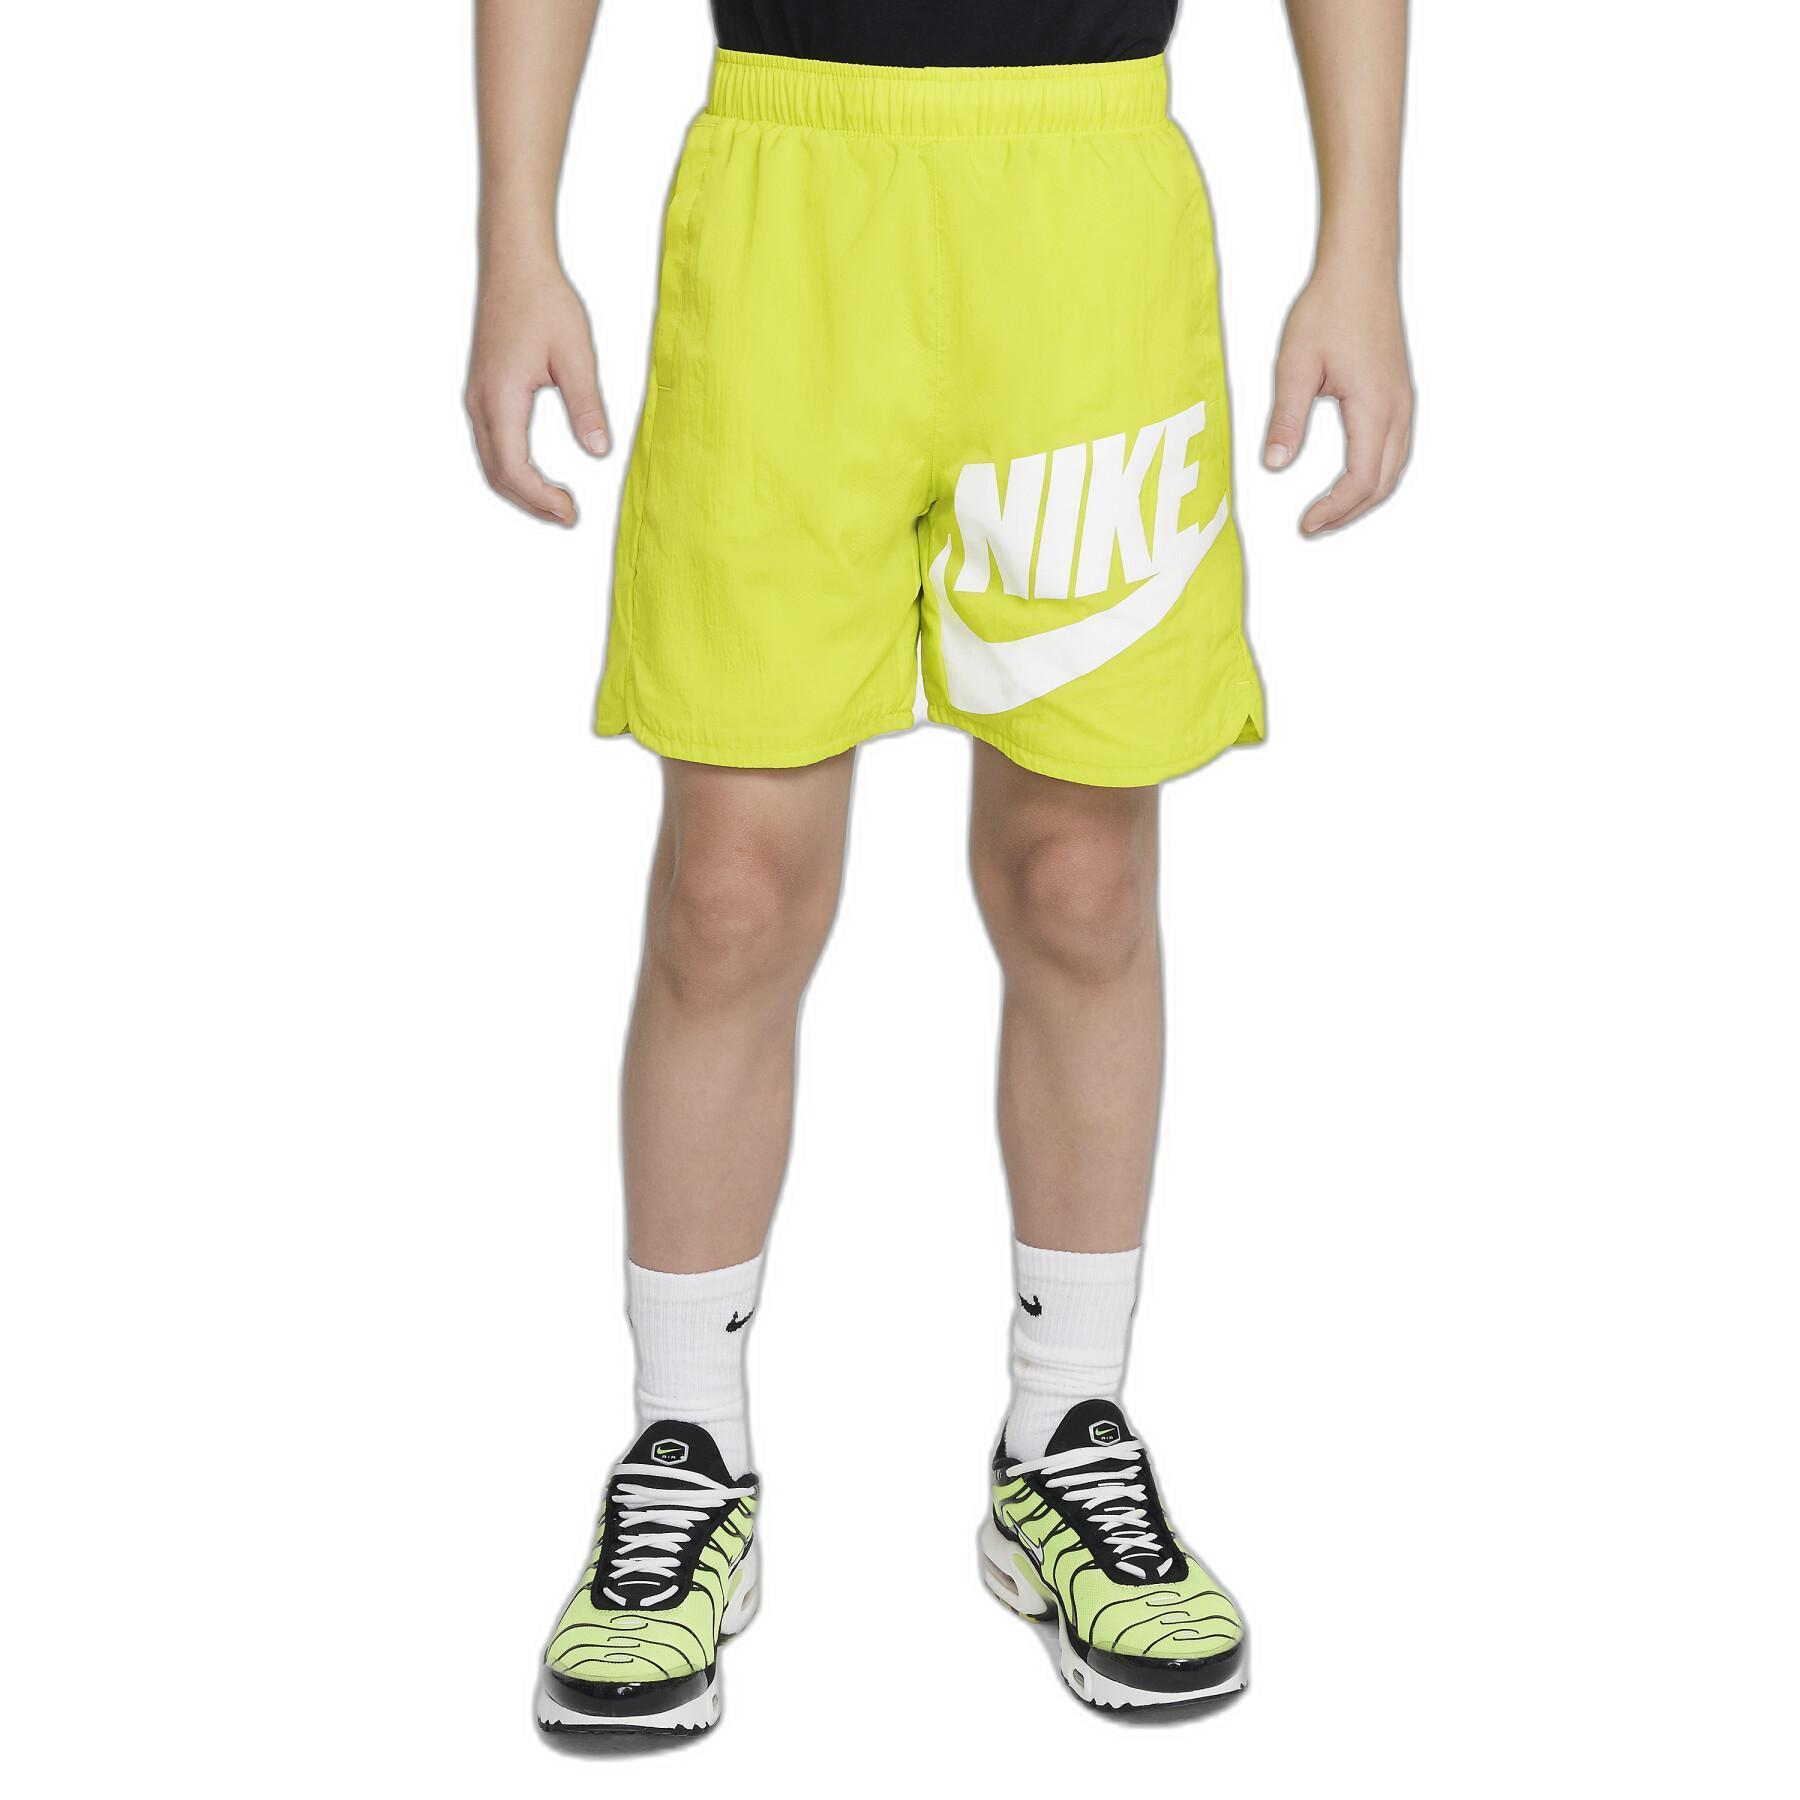 Calções para crianças Nike HBR